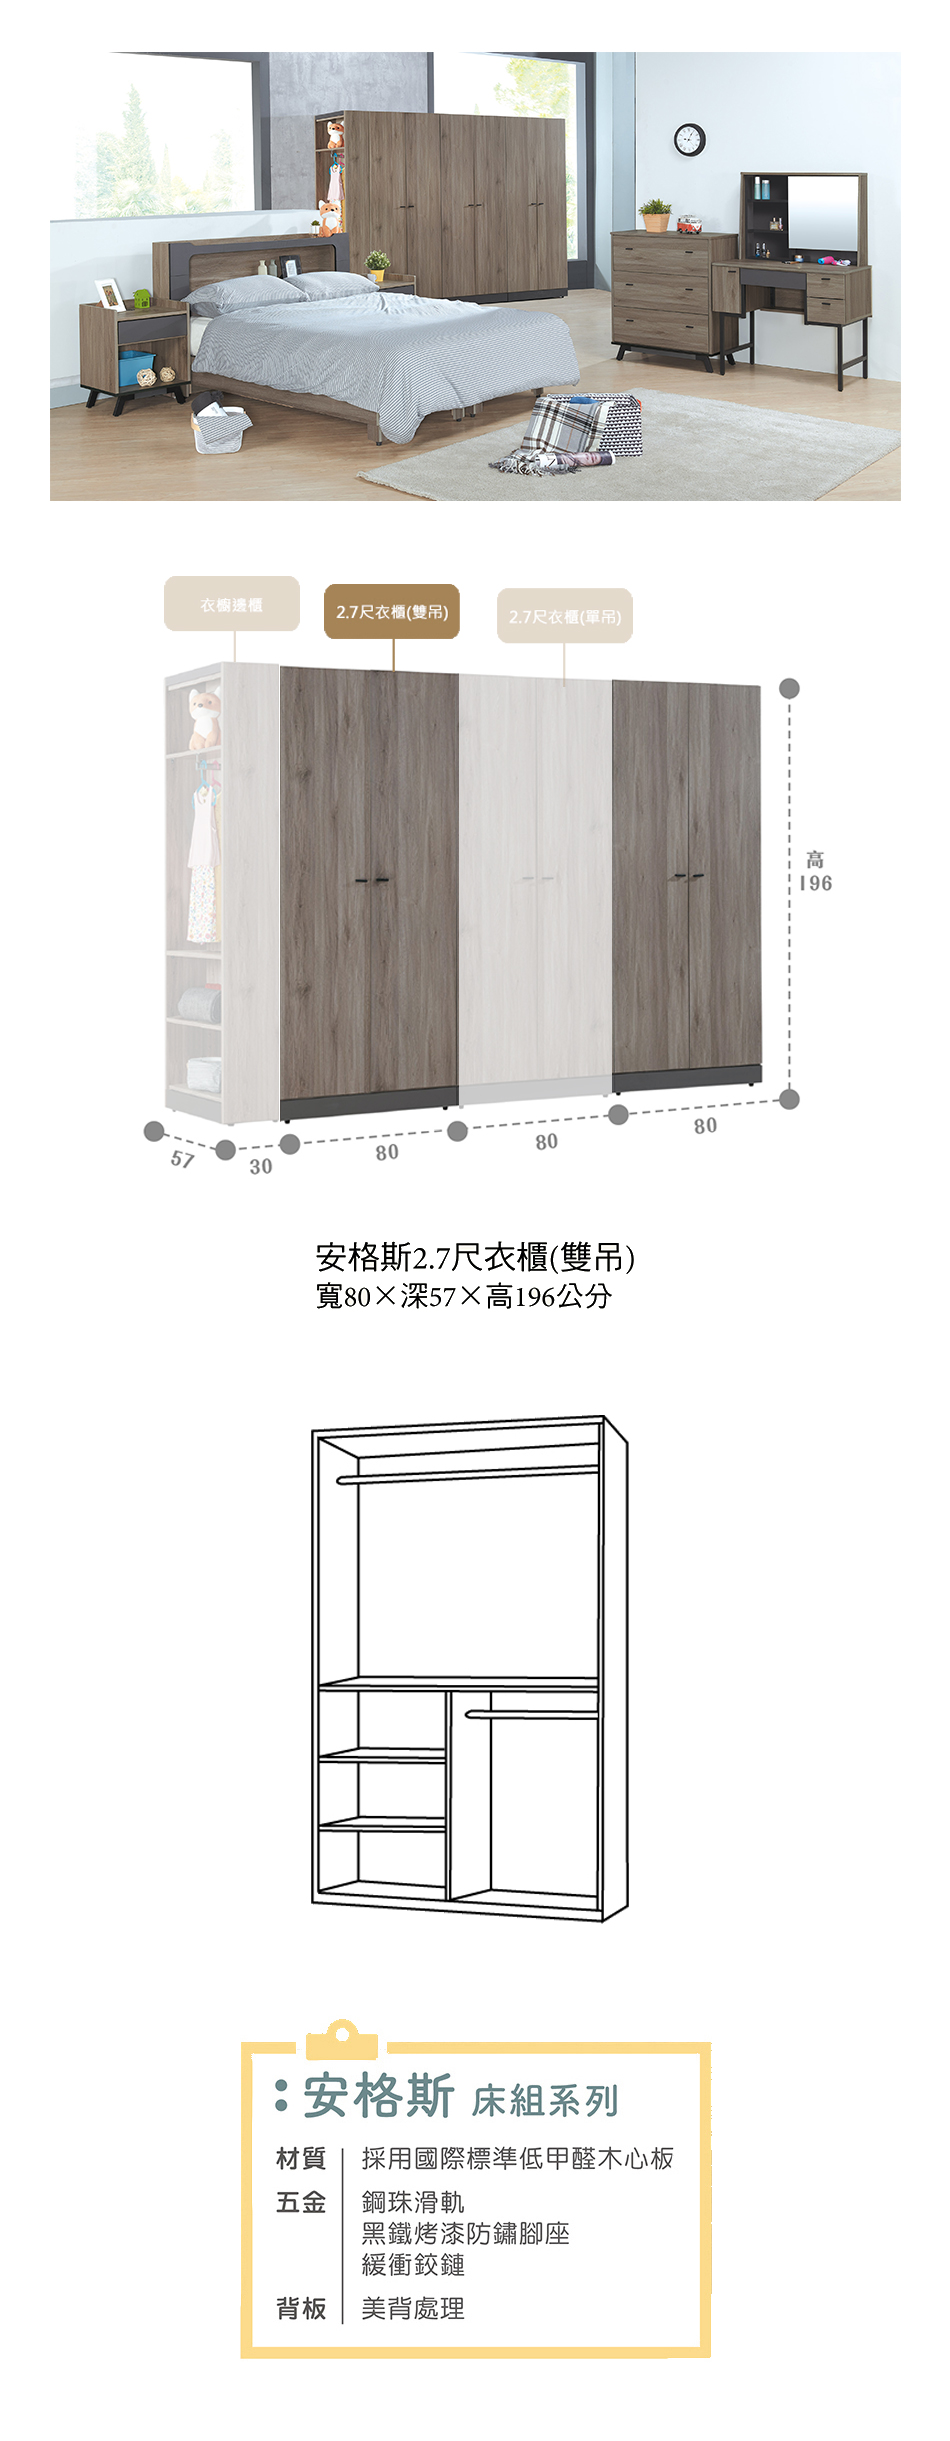 日式安格斯2.7尺雙吊衣櫃